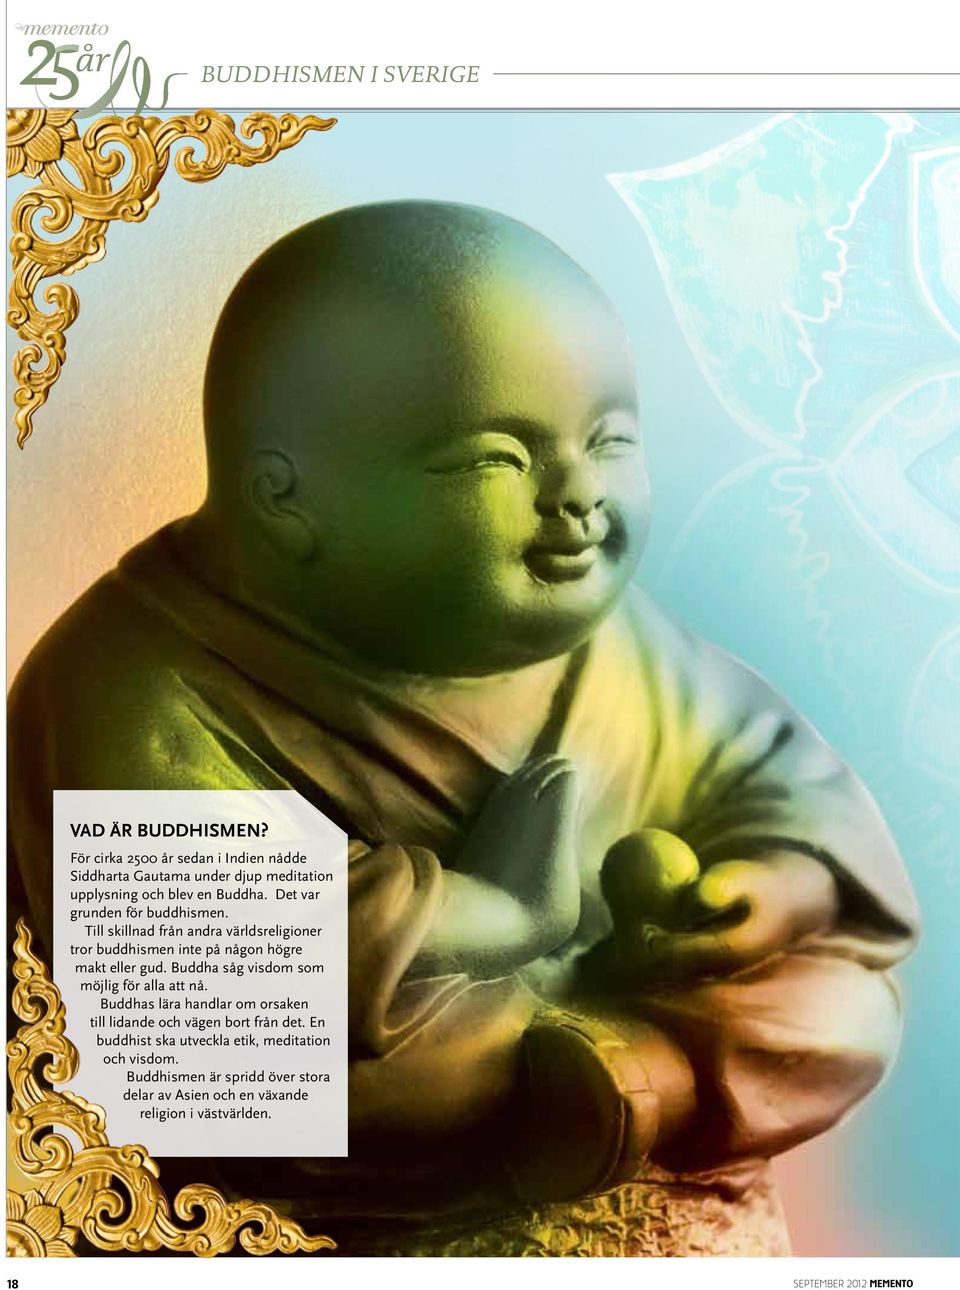 Buddha såg visdom som möjlig för alla att nå. Buddhas lära handlar om orsaken till lidande och vägen bort från det.